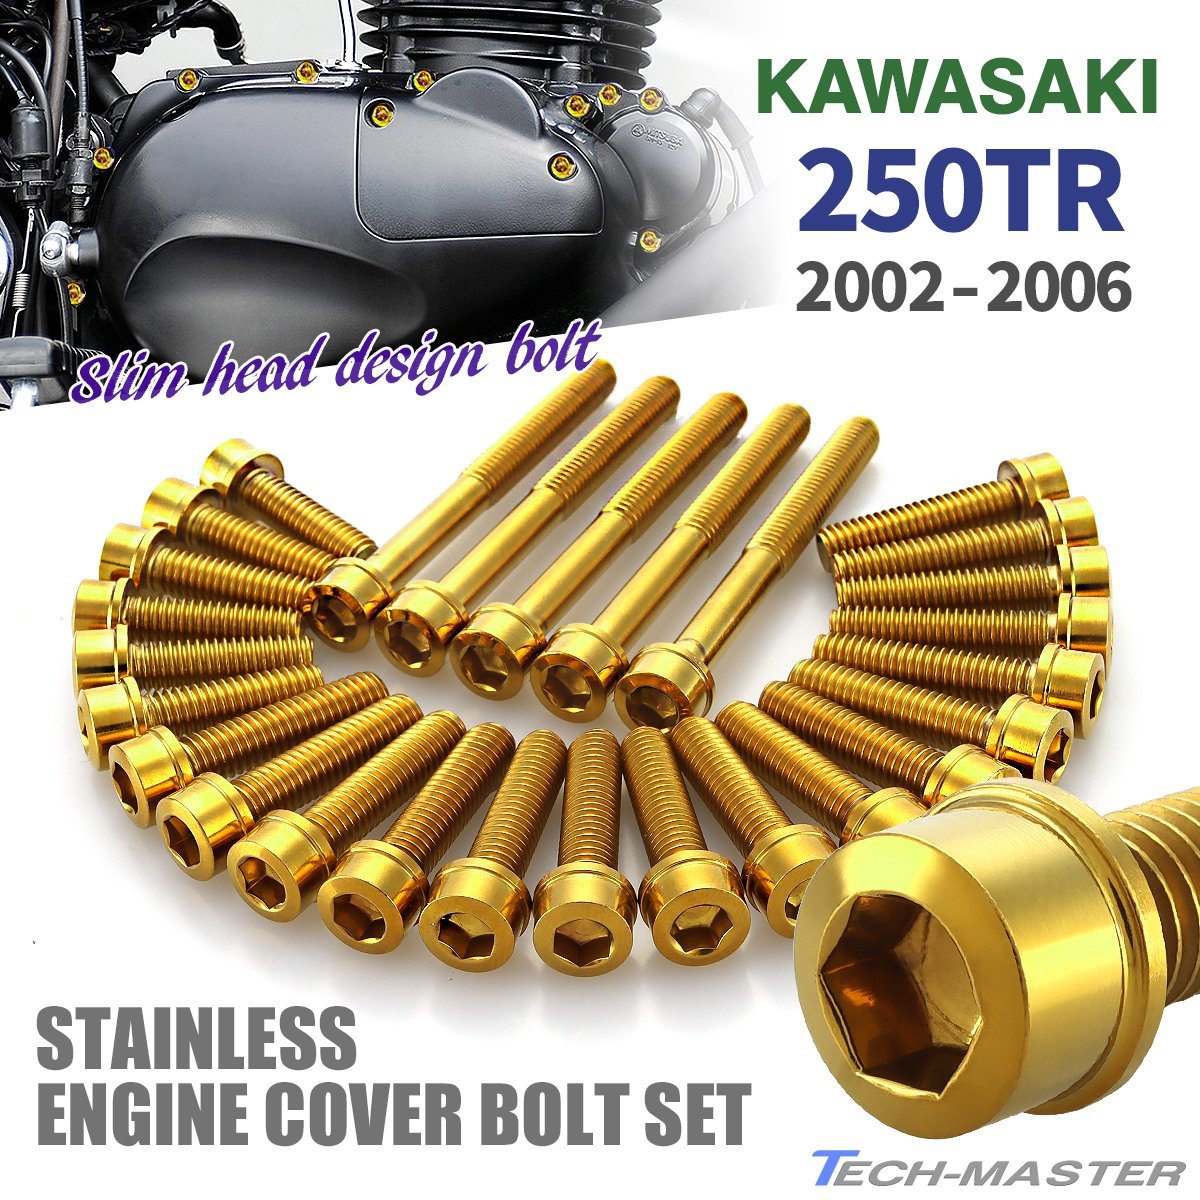 250TR 2002年～2006年 エンジンカバーボルト 27本セット ステンレス製 スリムヘッド カワサキ車用 ゴールドカラー TB8262_画像1